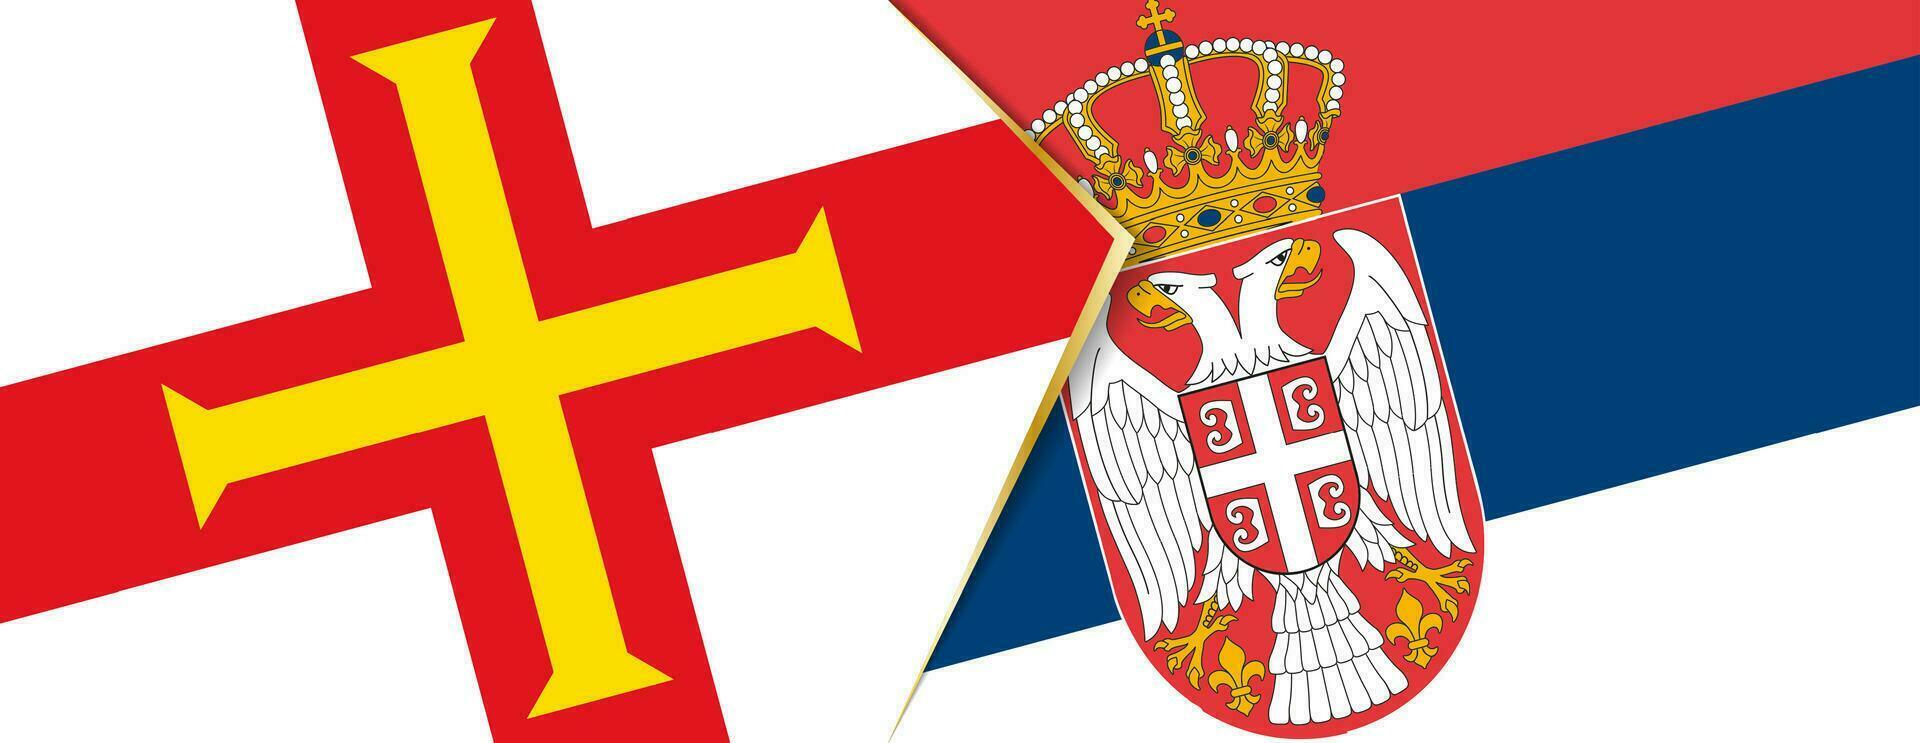 guernsey och serbia flaggor, två vektor flaggor.